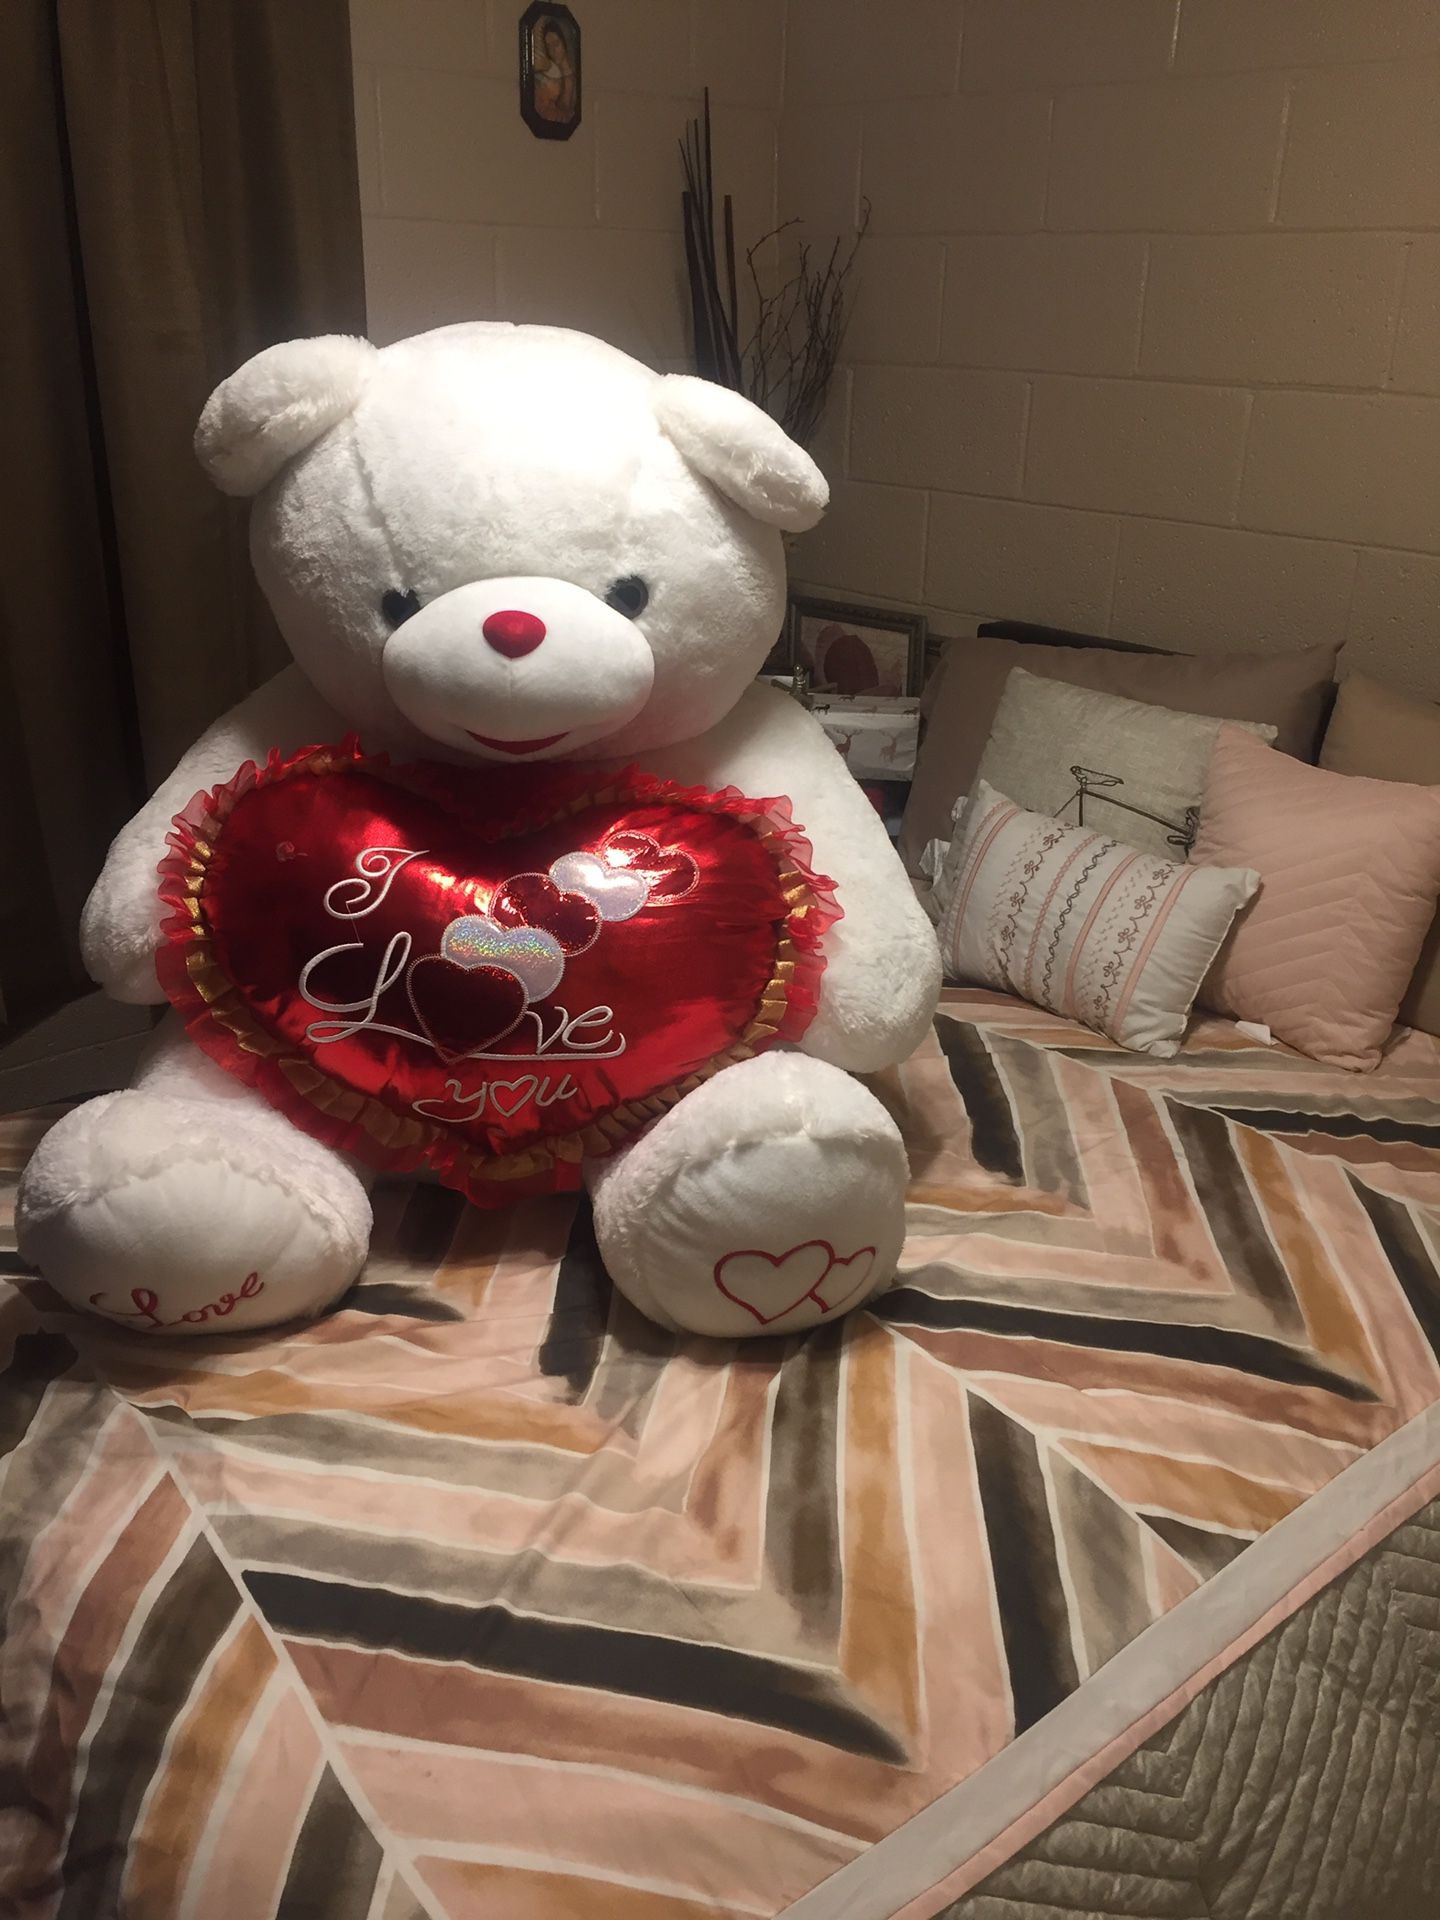 Giant teddy bear with heart